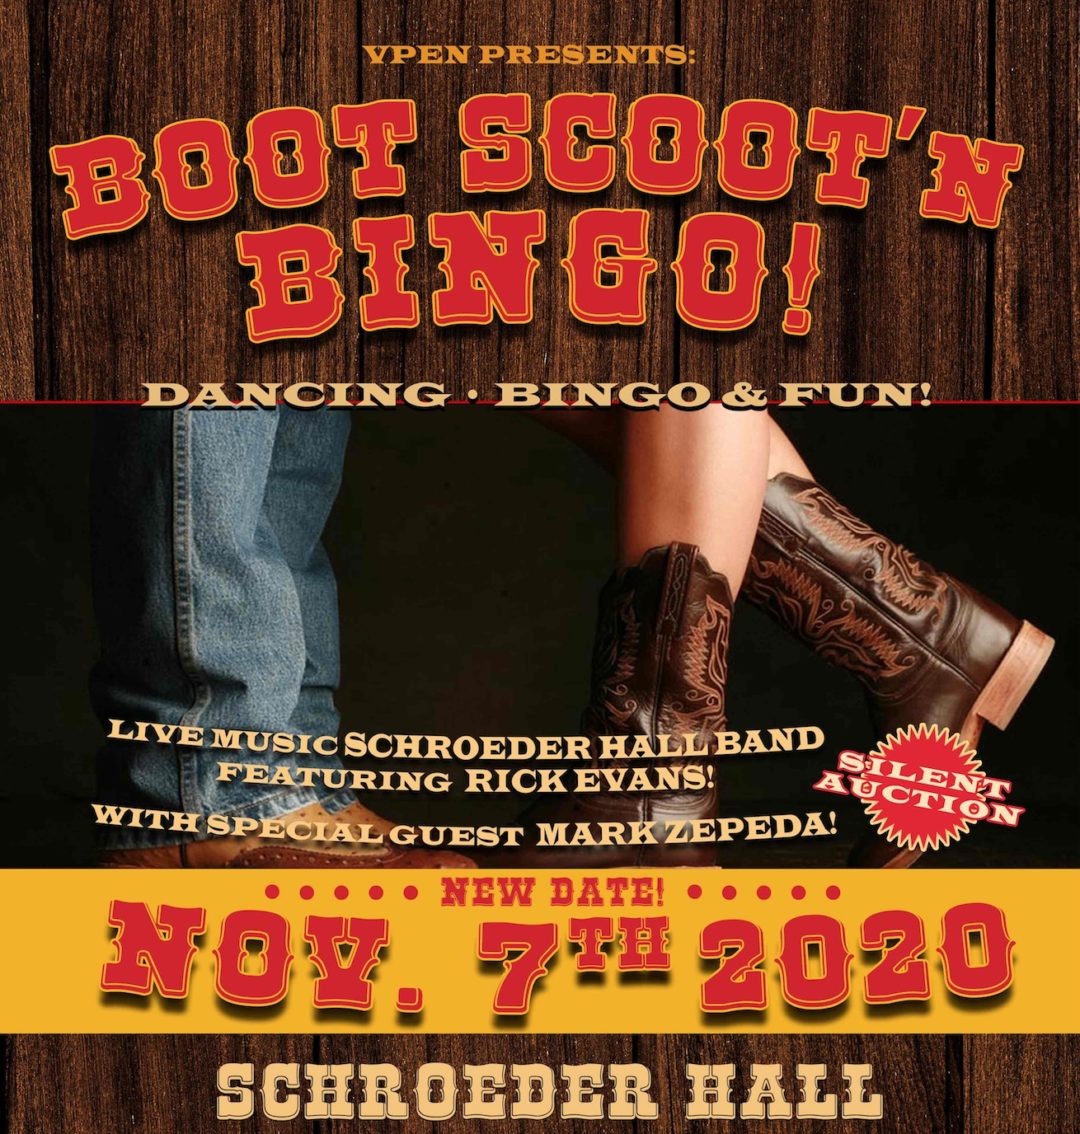 Boot Scoot’n Bingo